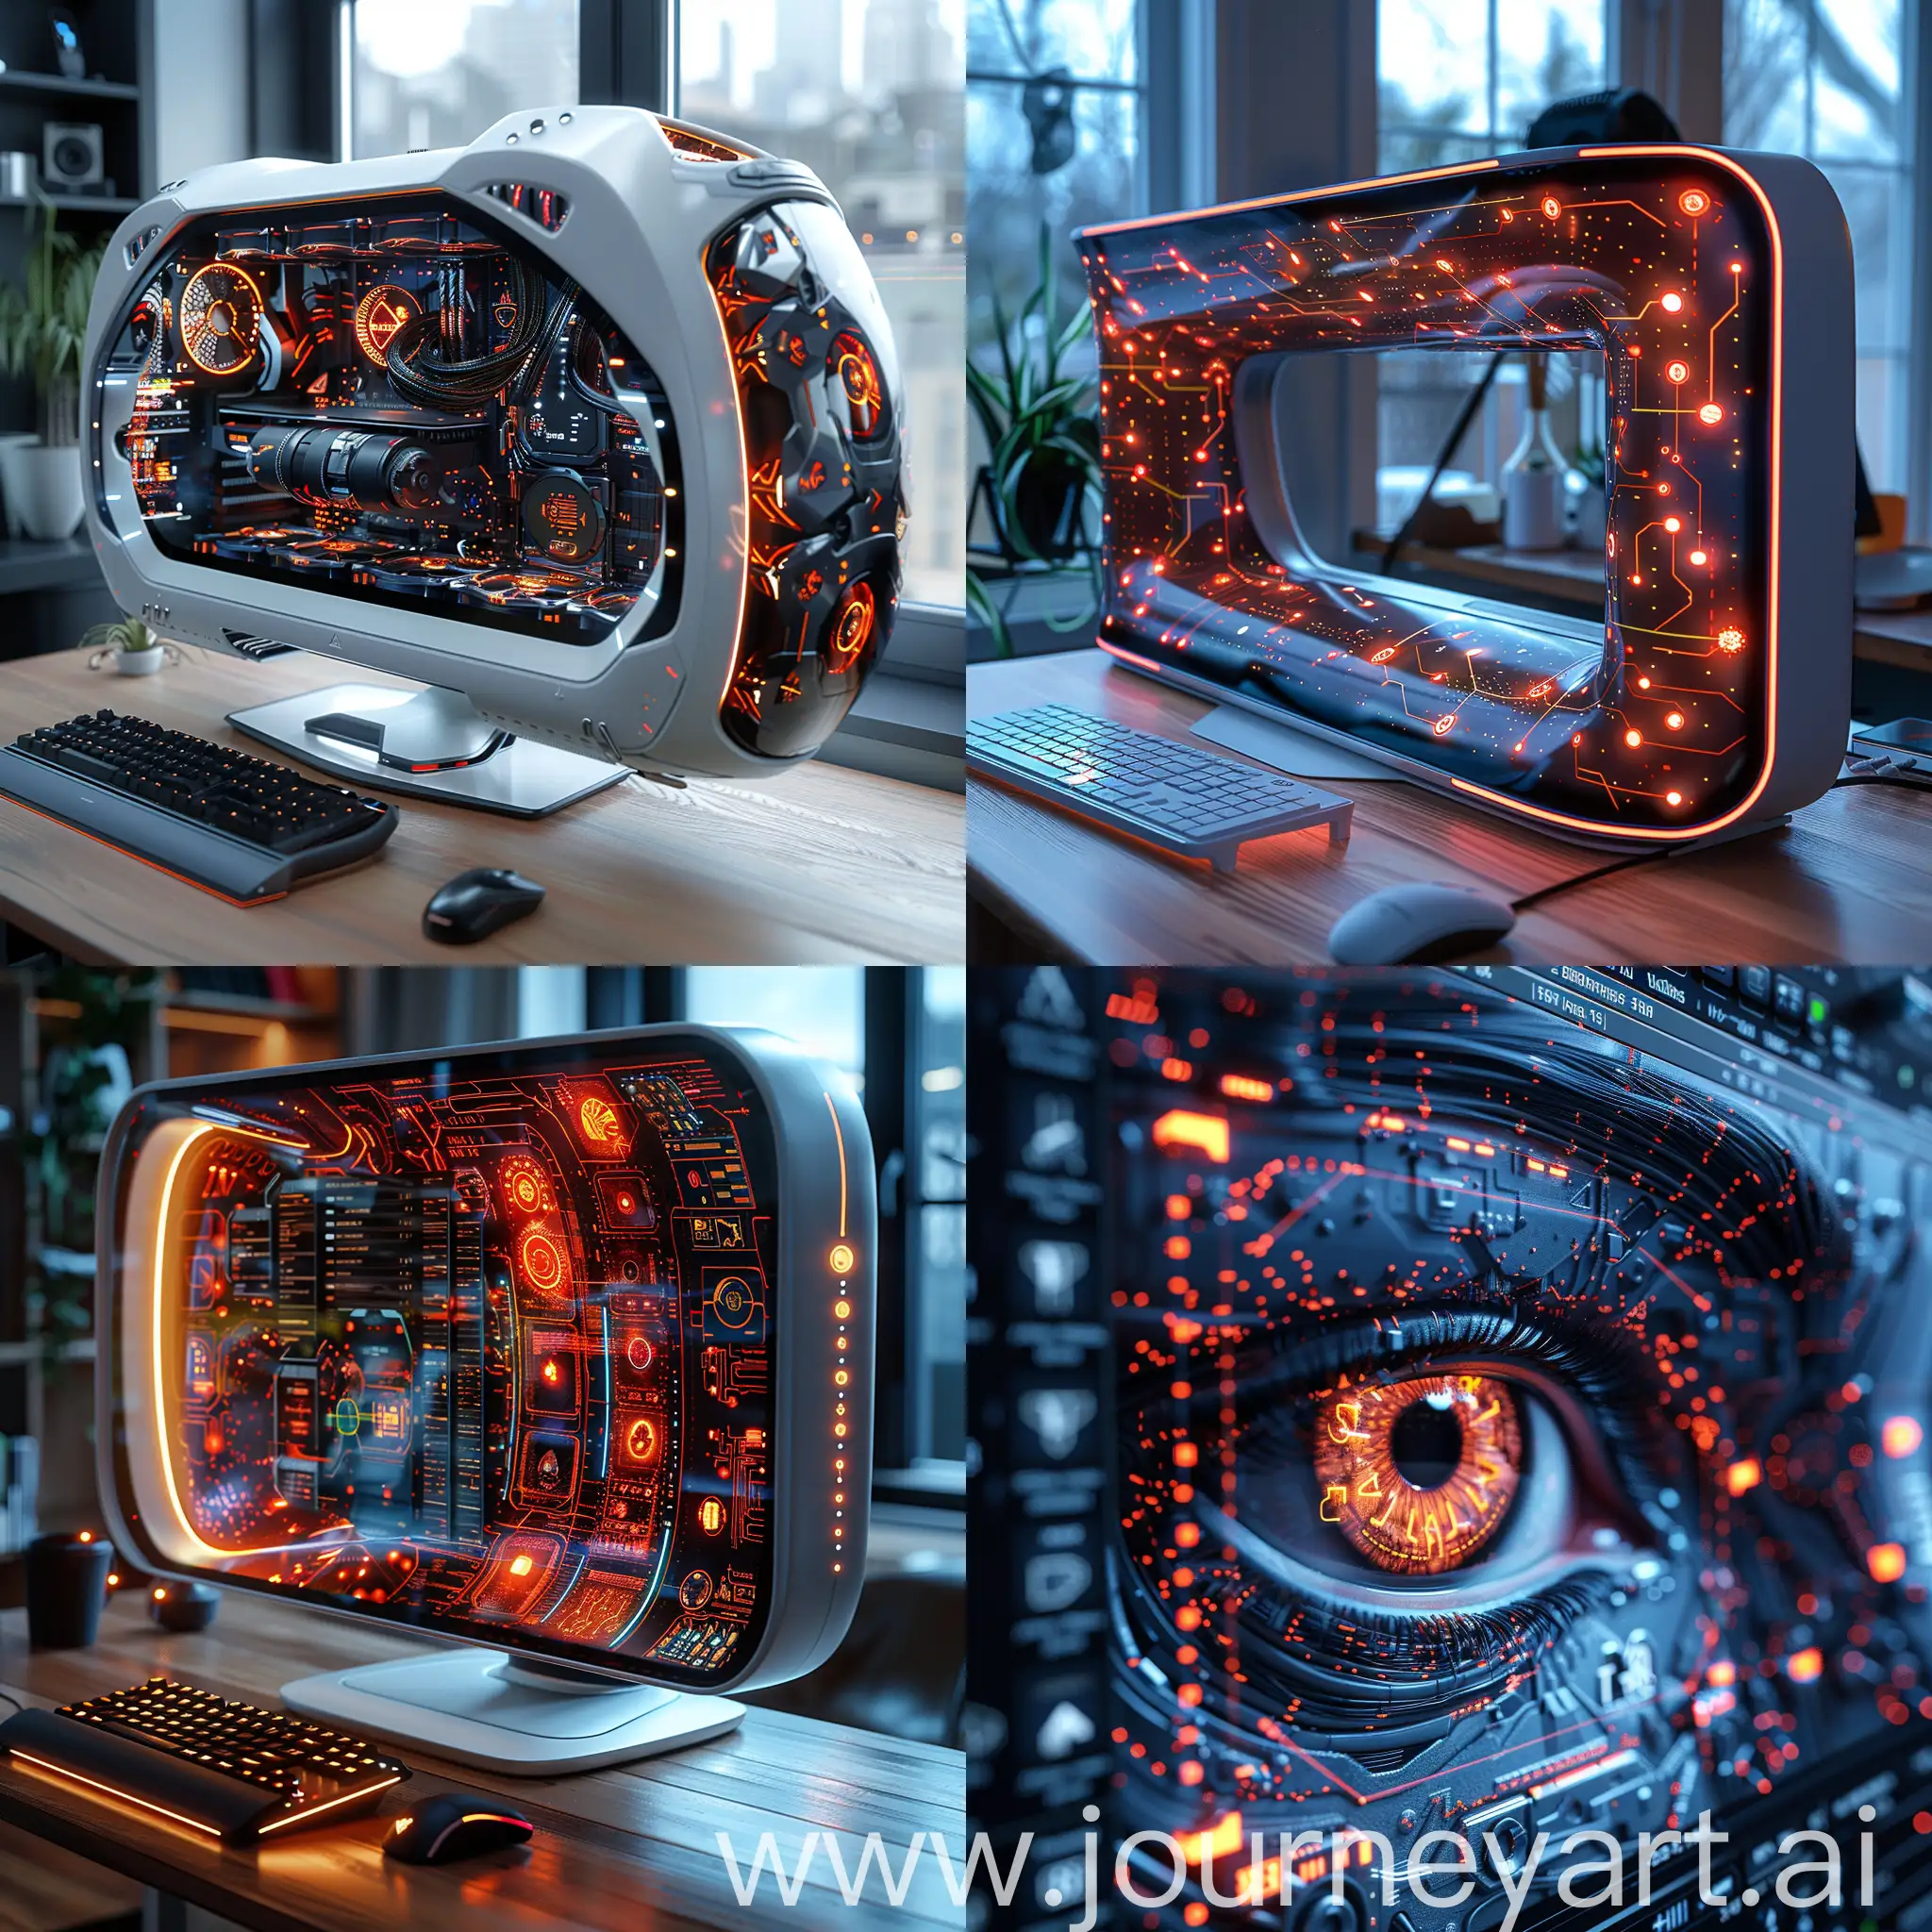 Neurofuturistic PC monitor, octane render --stylize 1000 --style raw